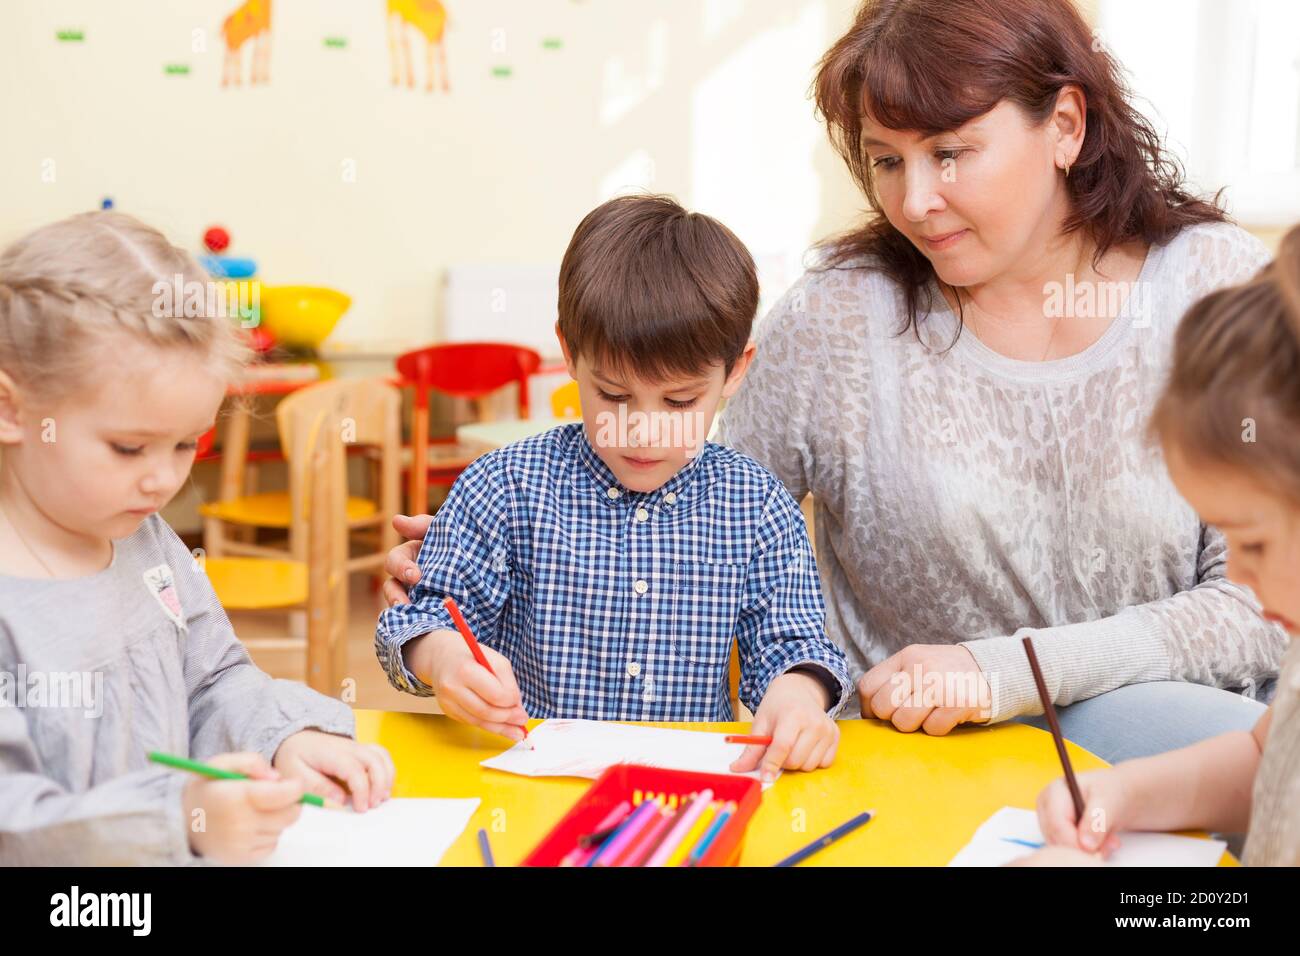 Mignon garçon, élève de la maternelle, dessine à la table jaune, avec les autres élèves. Éducateur, belle femme mûre l'observant et smili Banque D'Images